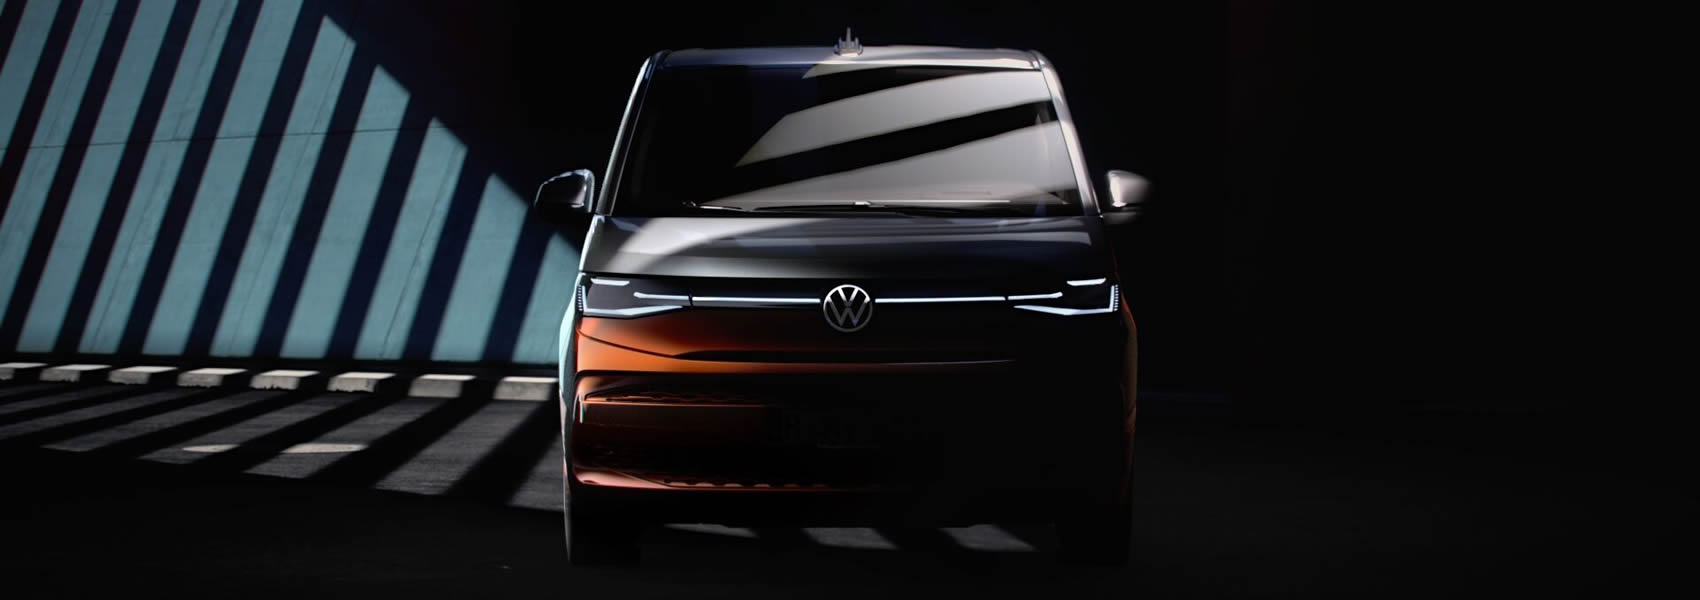 Volkswagen užitkové vozy - Nový VW Multivan